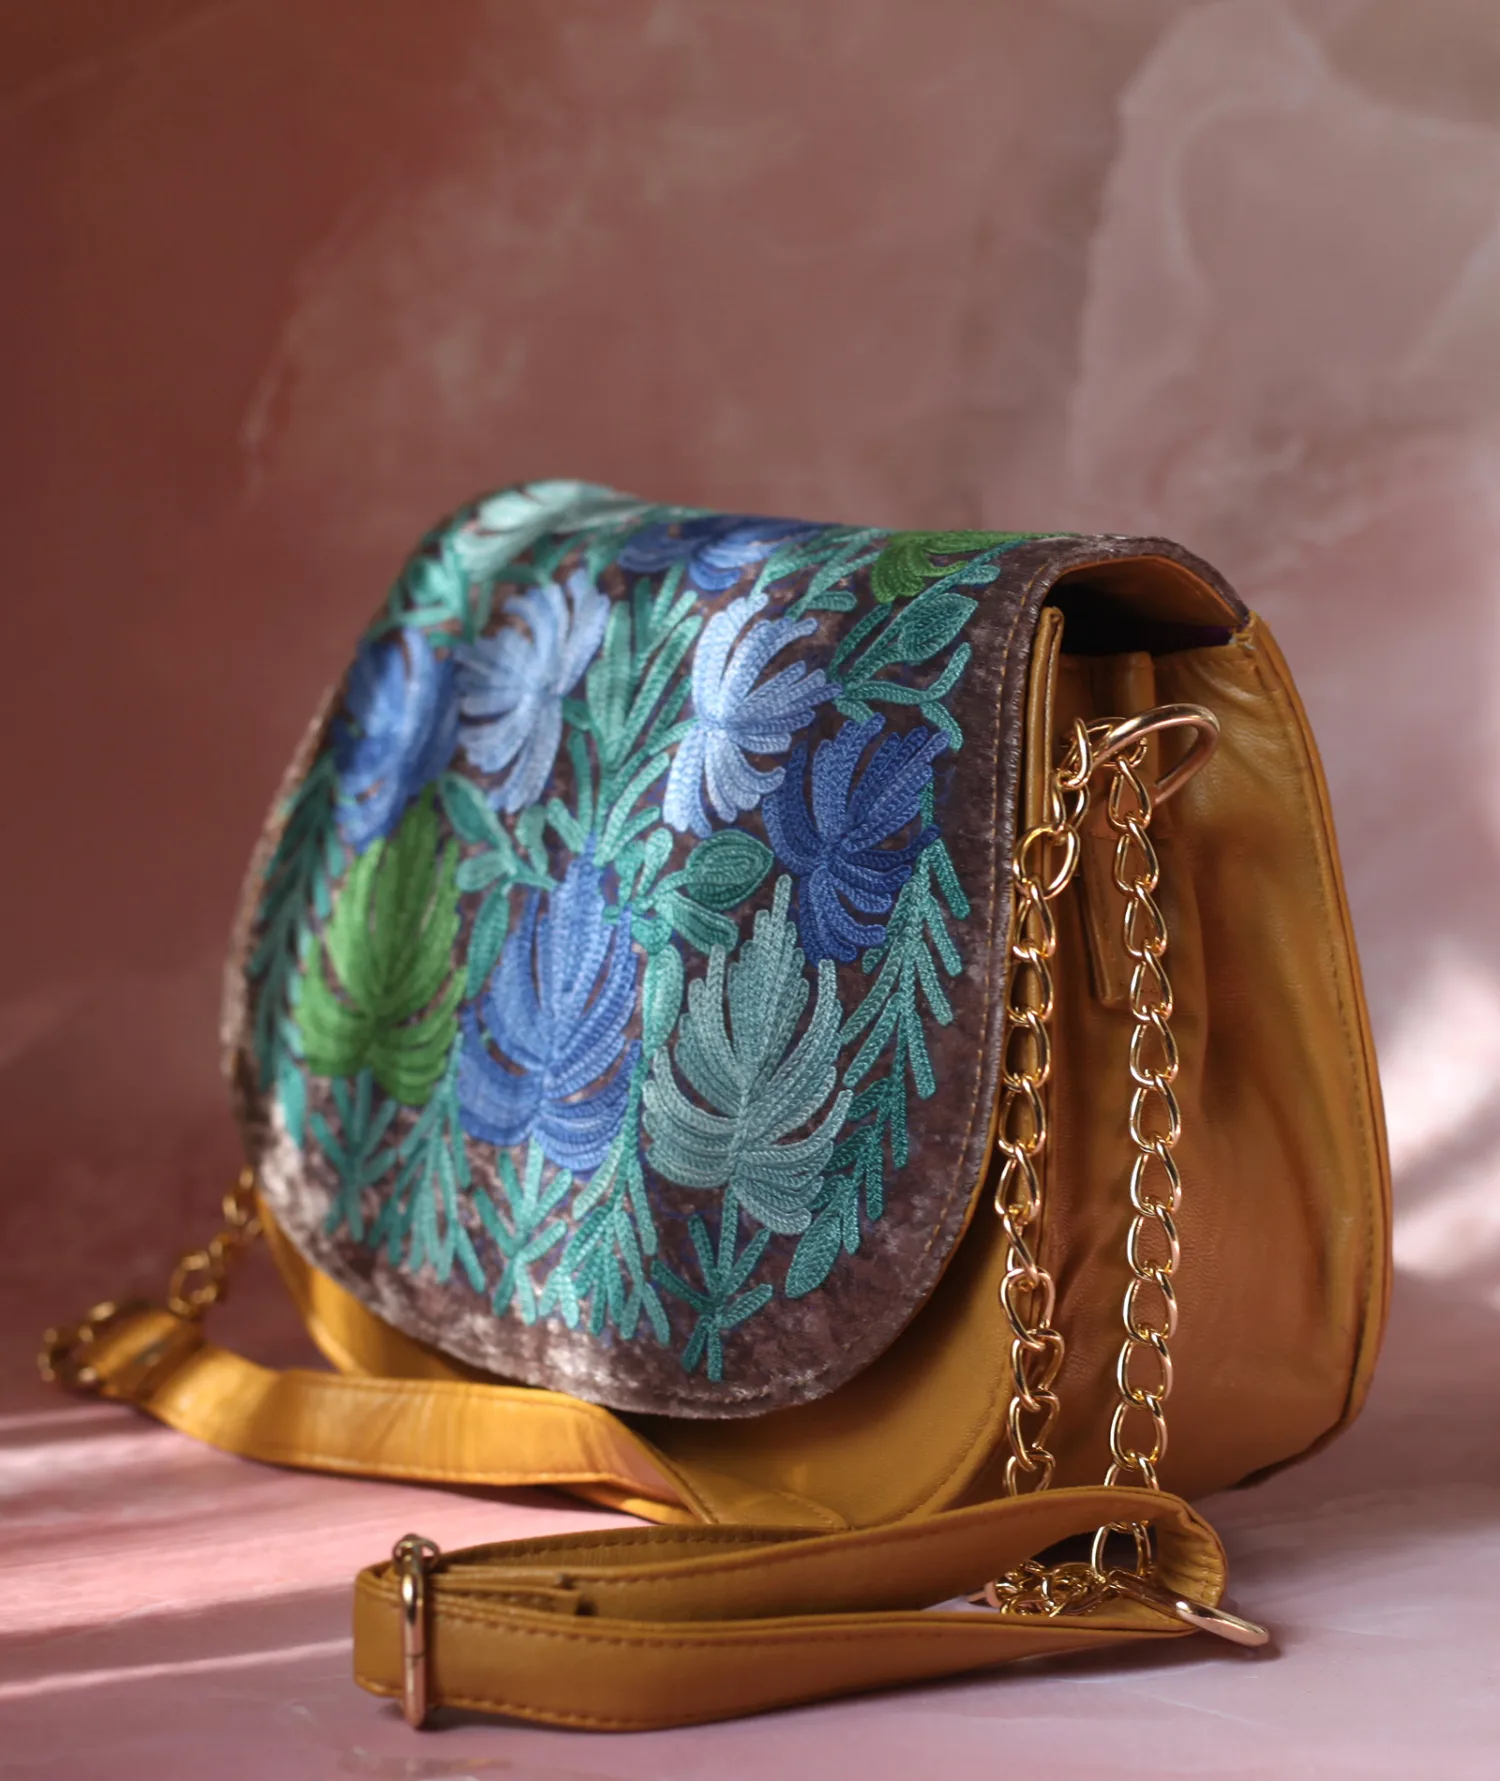 Shop Now Sky Blue Flower Design Aari Embroidered Sling Bag